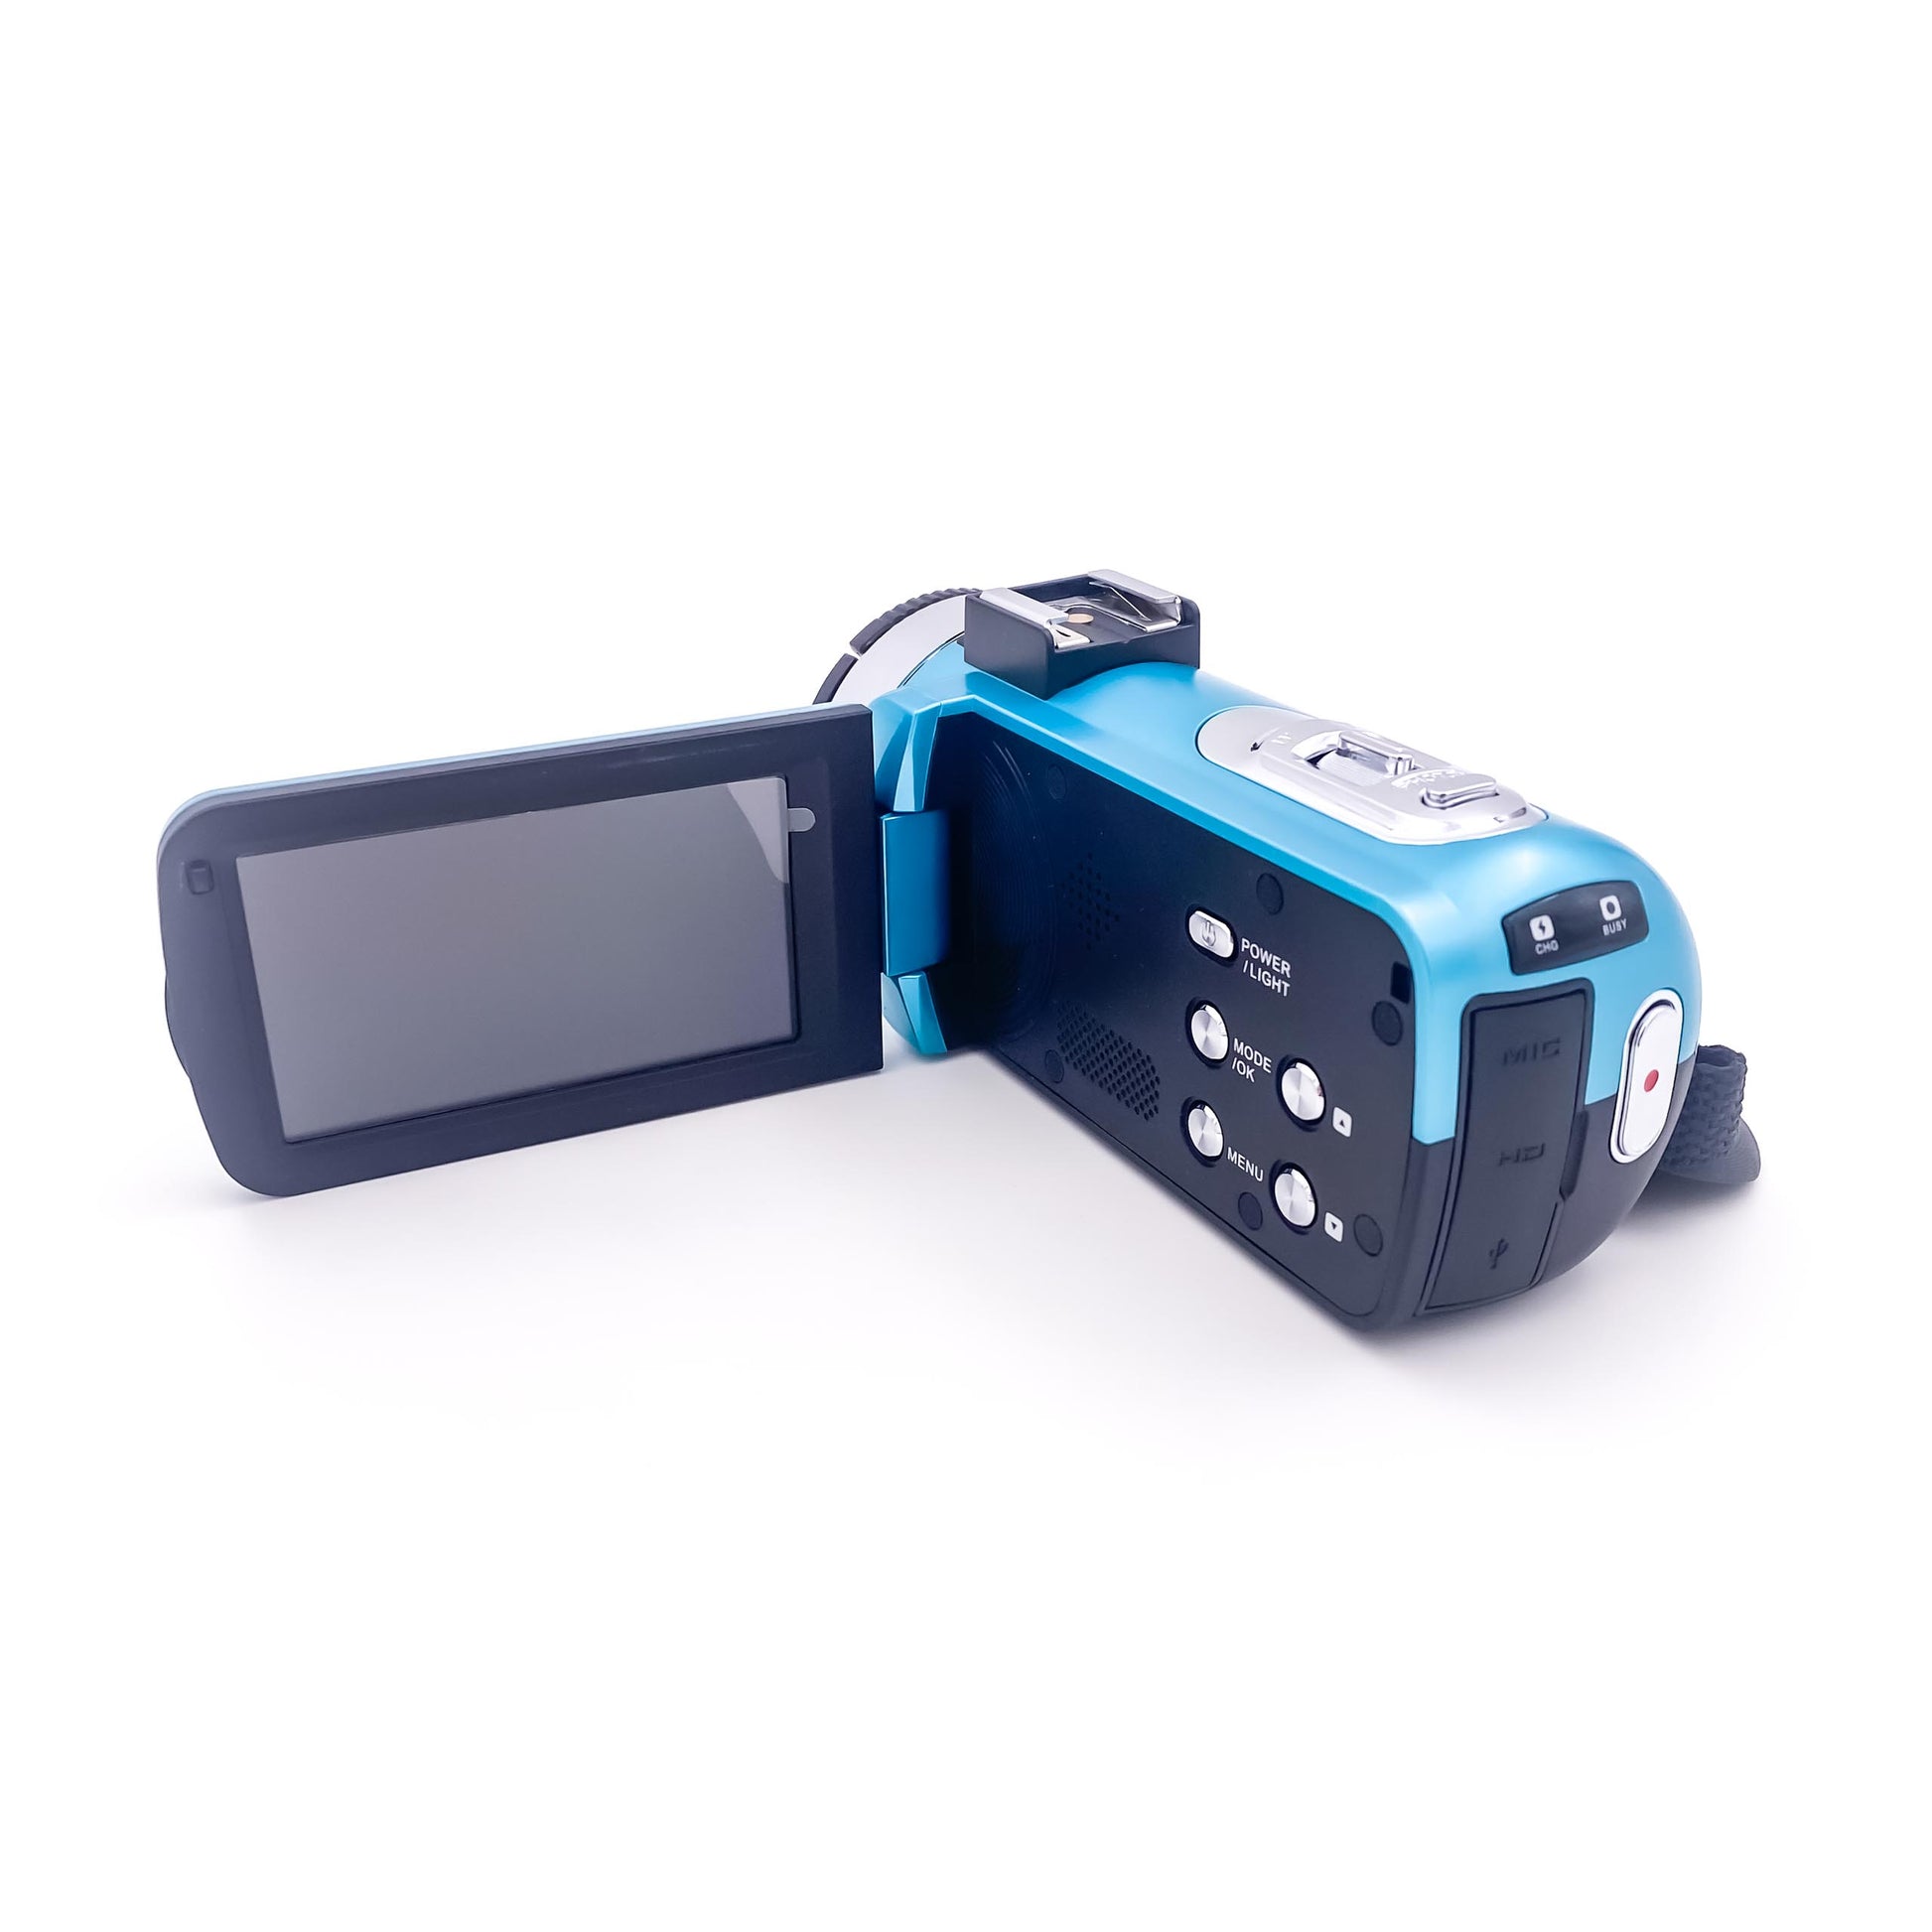 4k-digital-camcorder-id995hd-v1-teal-3